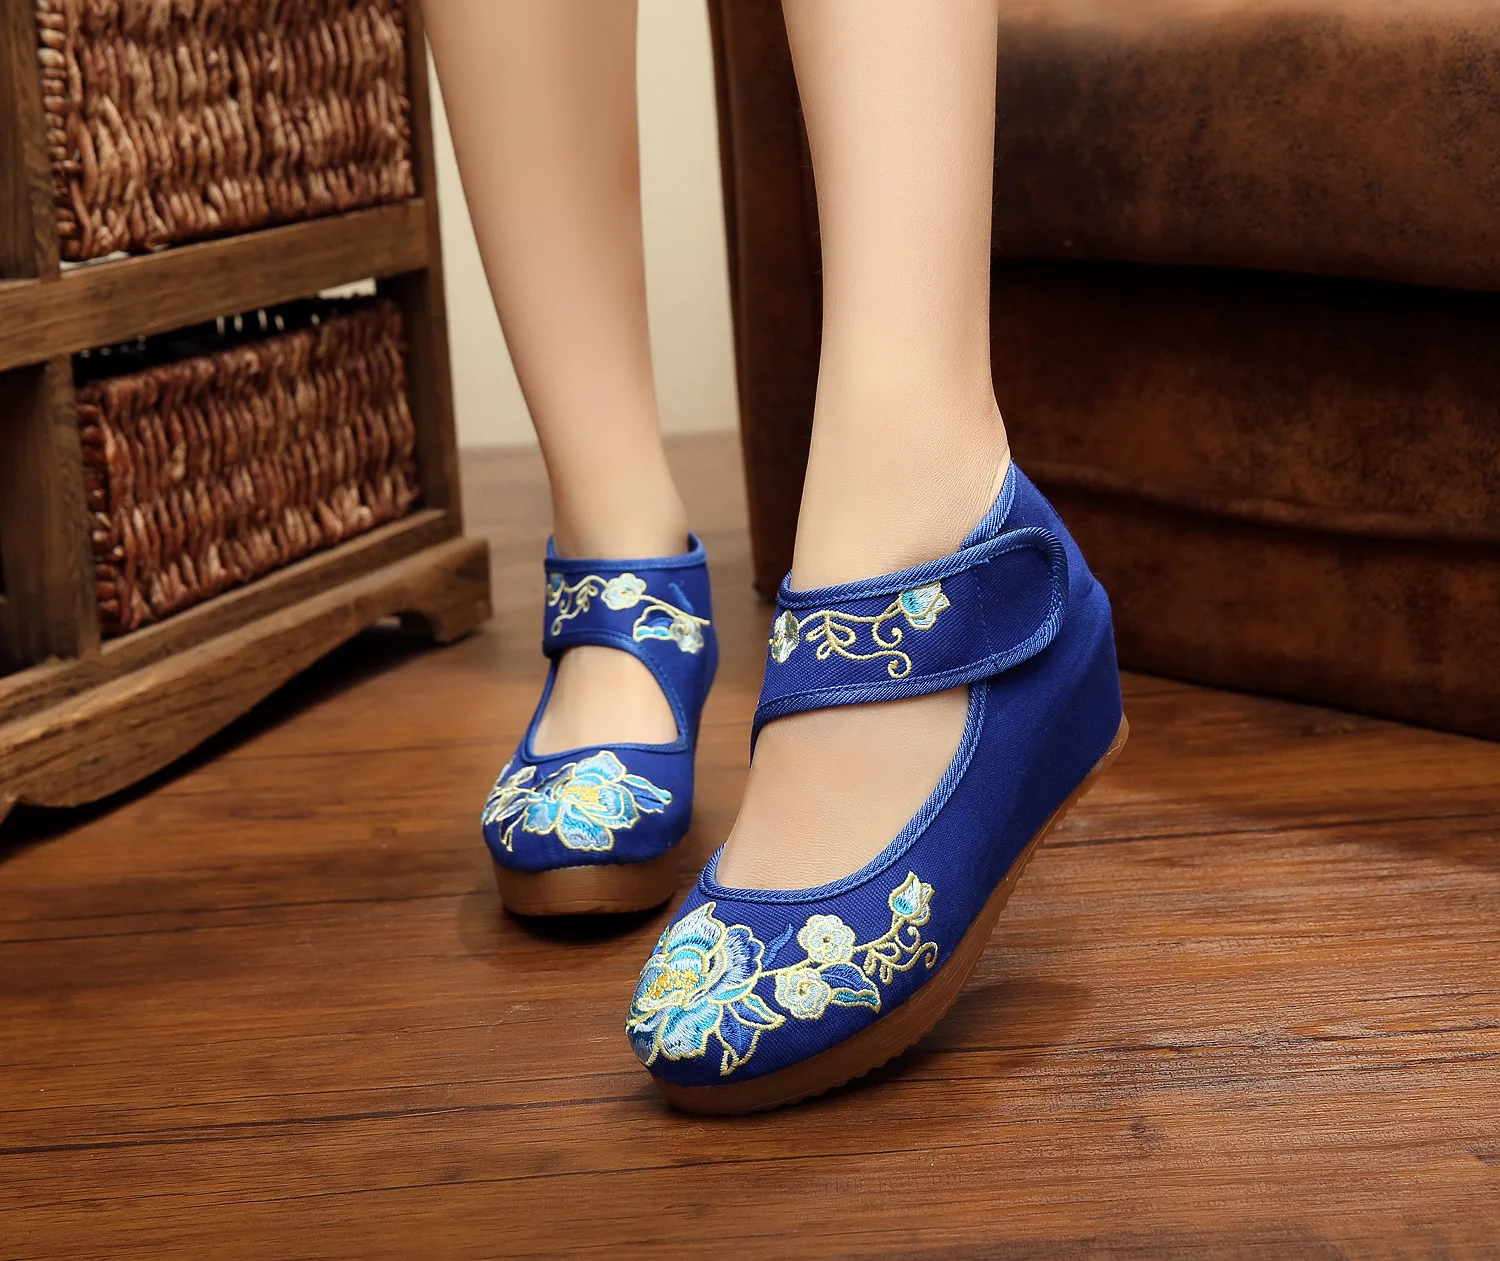 Женская обувь с острым носком и вышивкой «Старый Пекин» женские туфли с цветочным принтом туфли на плоской подошве Mary Jane обувь в китайском стиле из джинсовой ткани повседневная текстильная обувь большие размеры